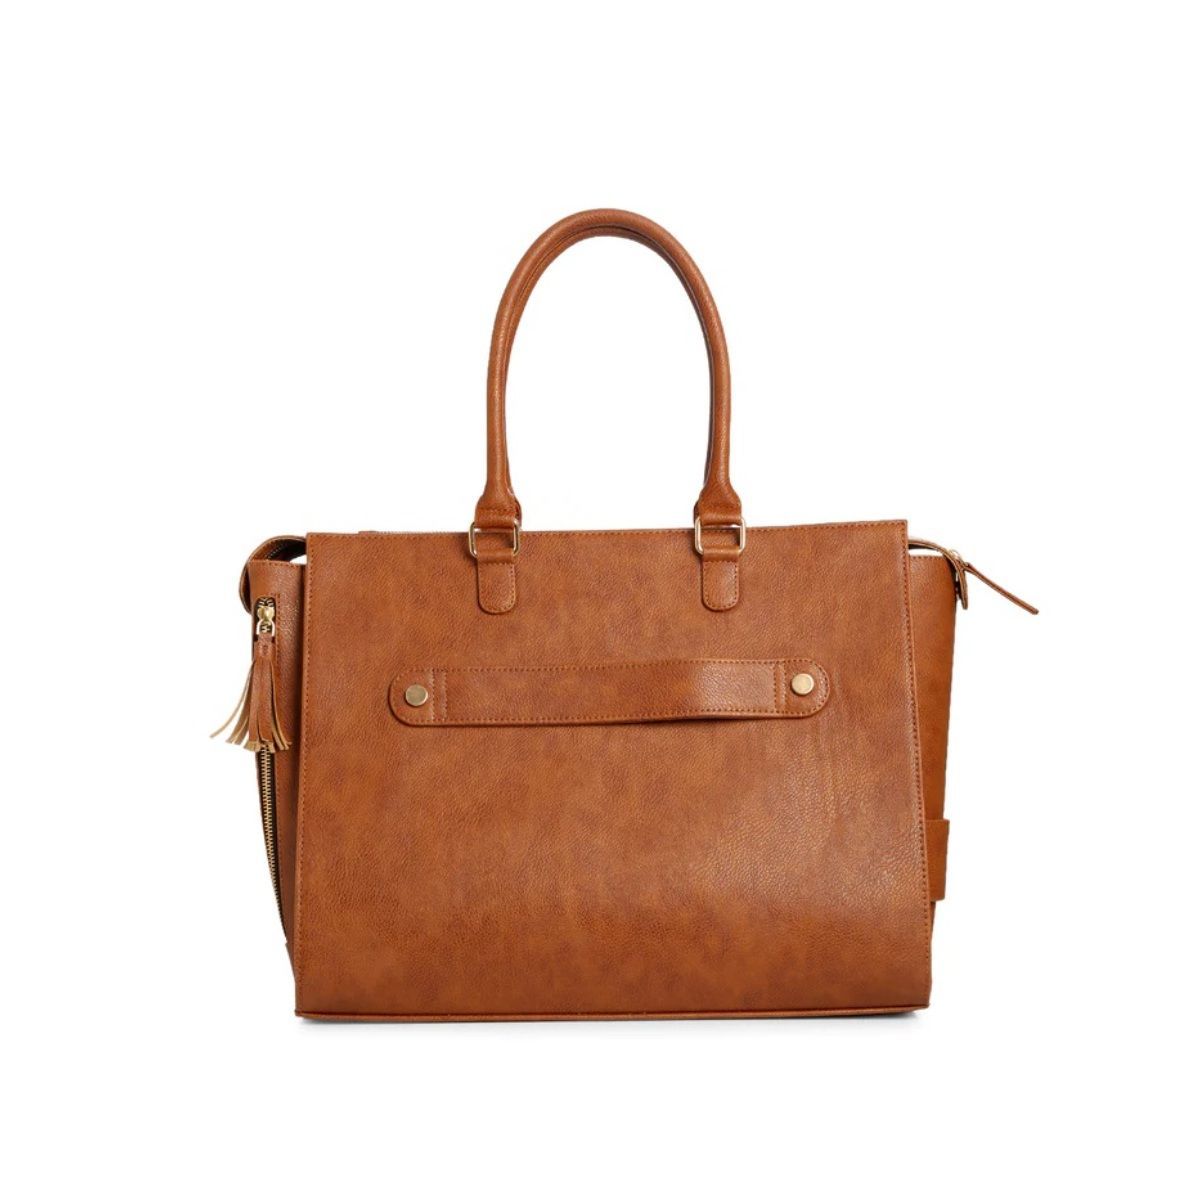 Tasca | Multipurpose leather bag | leather side bag for men – Rashki